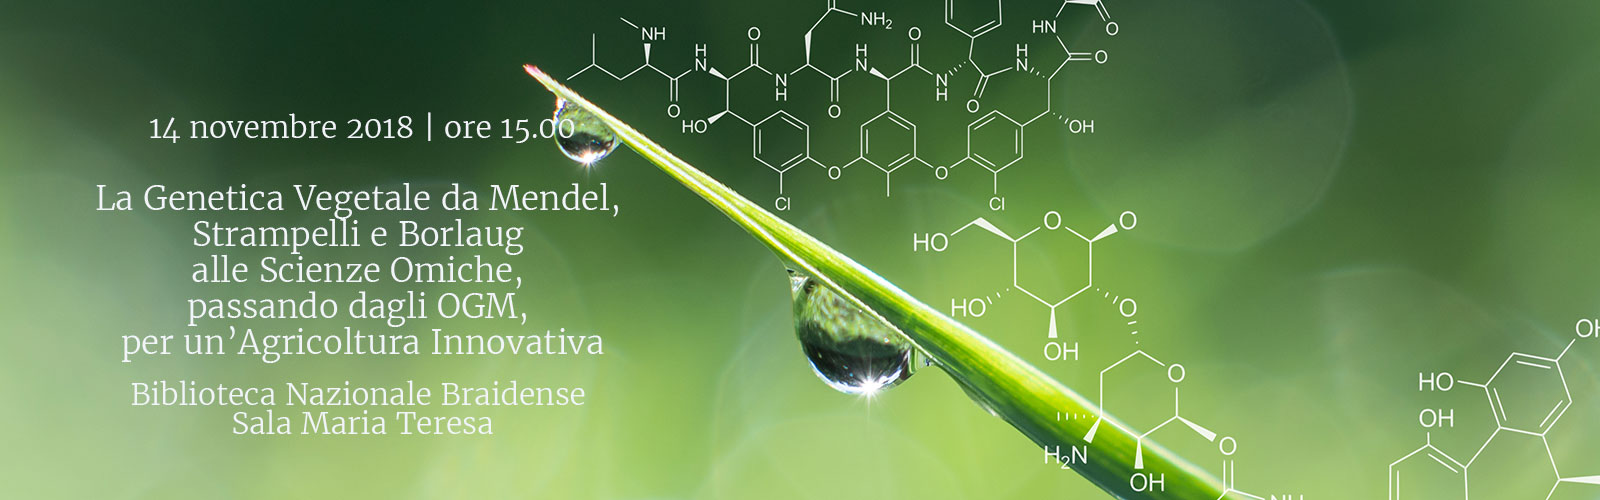 La Genetica Vegetale da Mendel, Strampelli e Borlaug alle Scienze Omiche, passando dagli OGM, per un’Agricoltura Innovativa